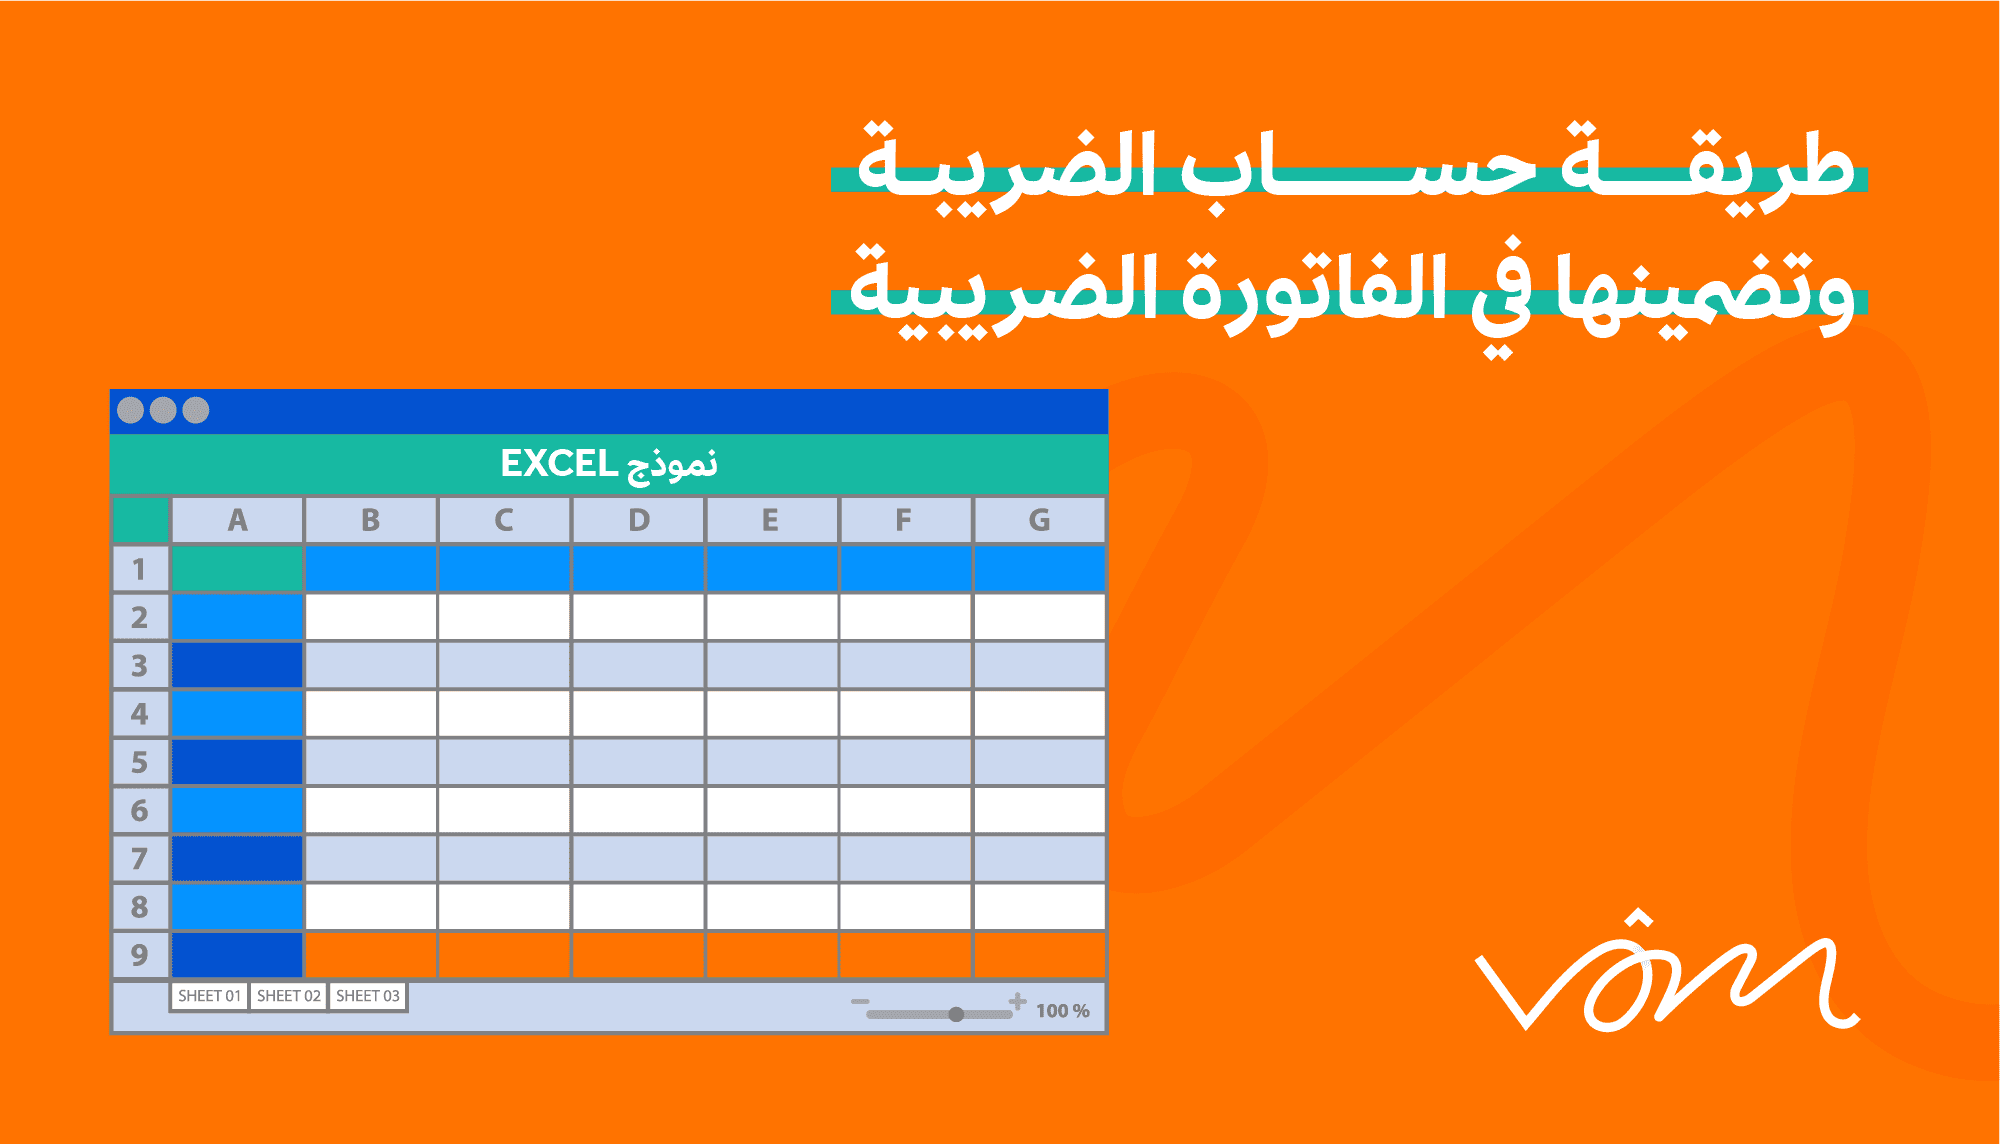 كيفية حساب الضريبة وتضمينها في الفاتورة الضريبية باستخدام نموذج Excel؟ 